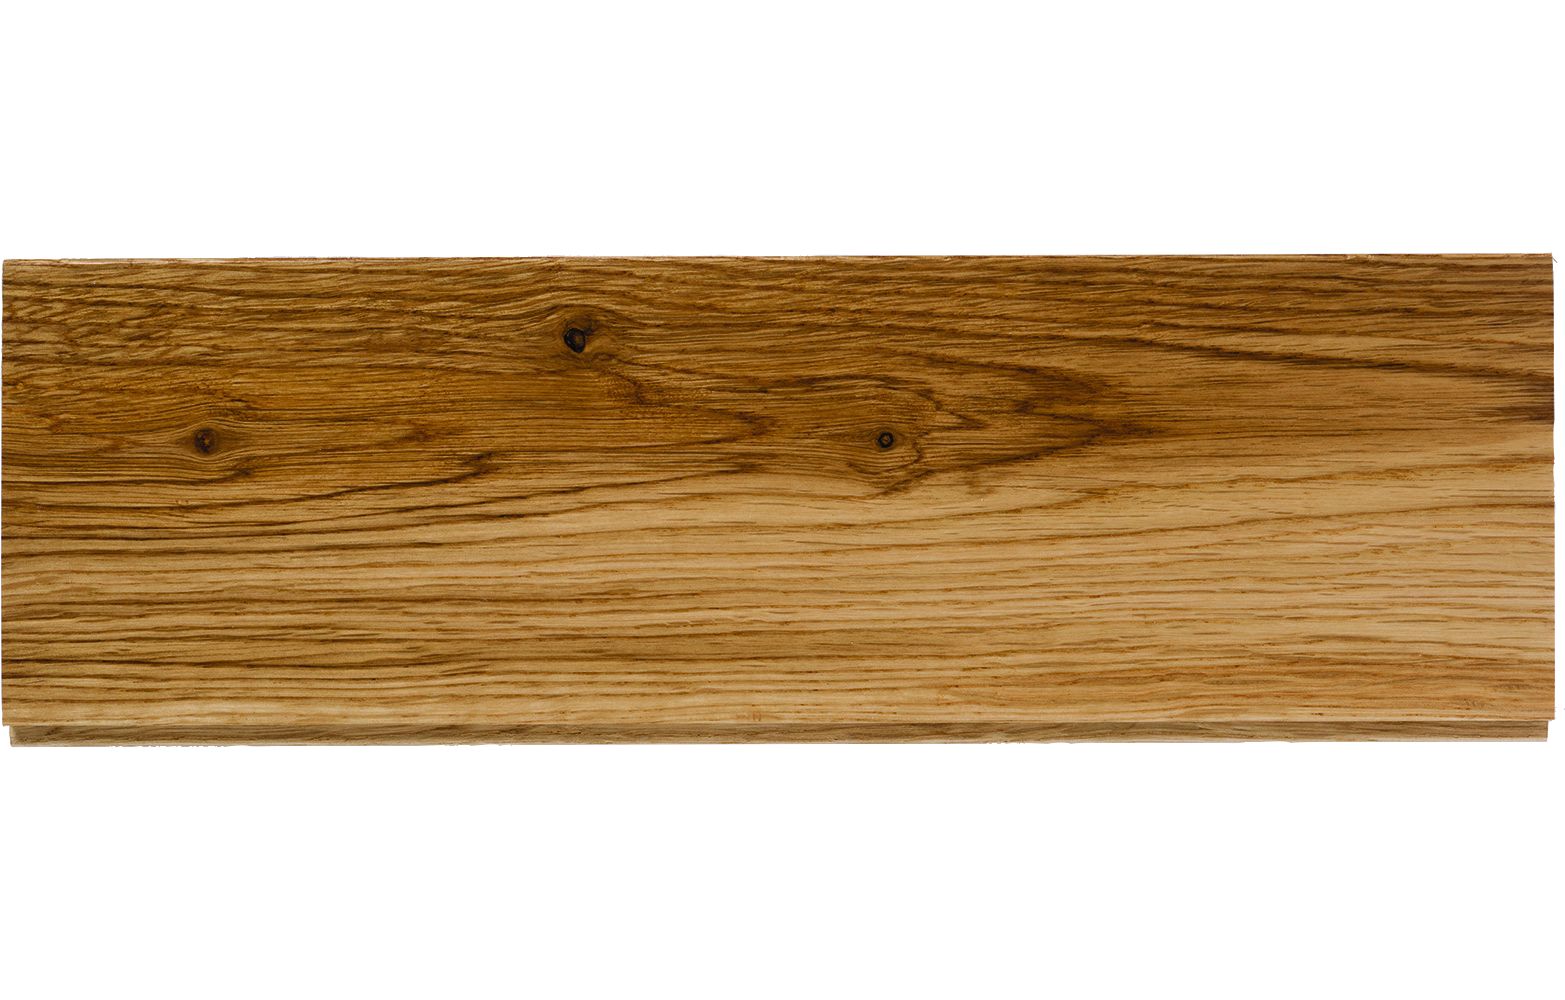 W by Woodpecker Classic Light Oak 18mm Solid Wood Flooring Sample